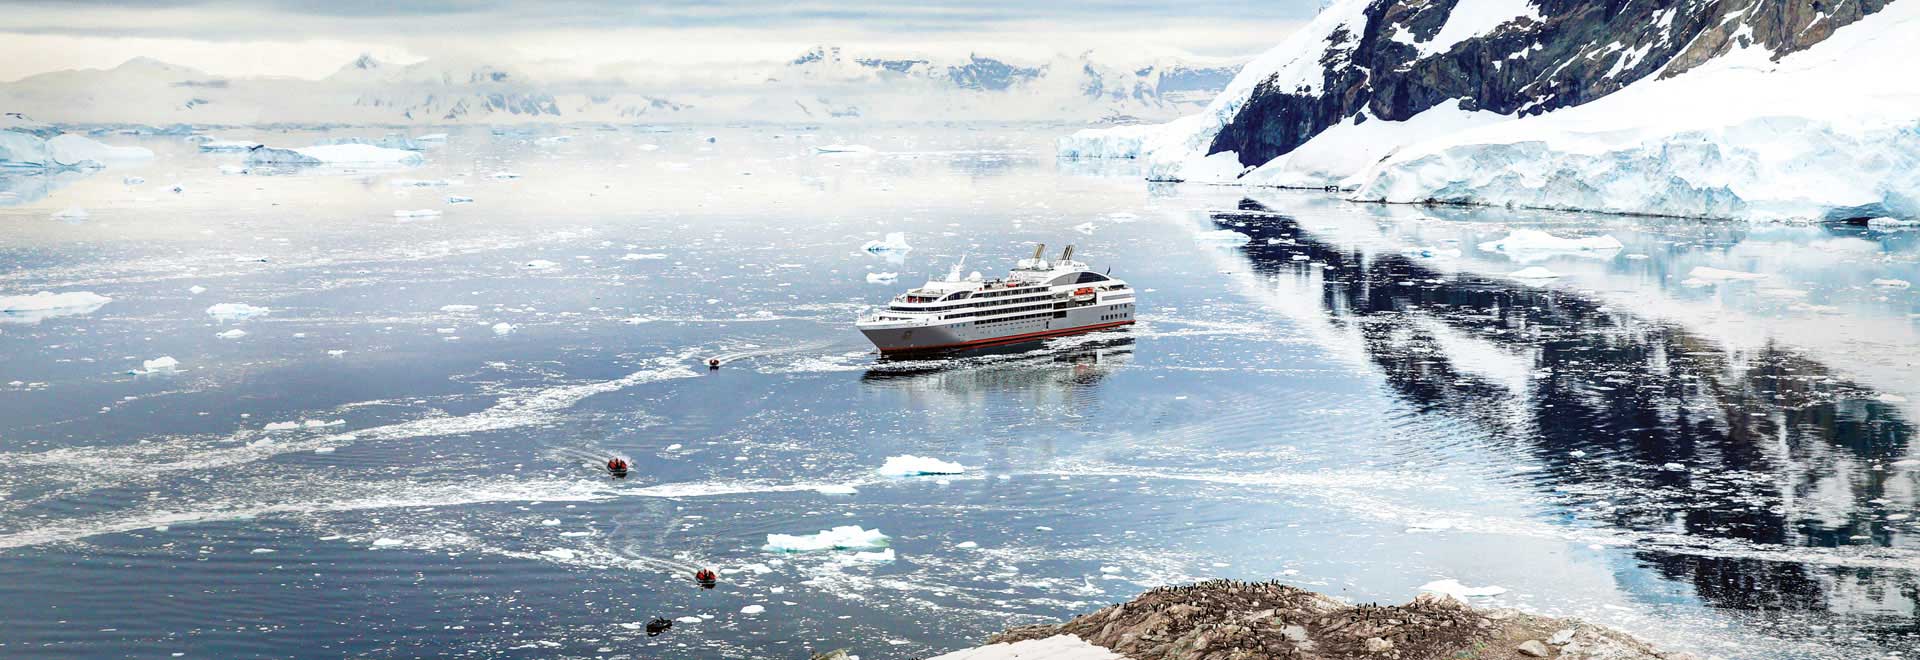 Antarctica Neko Harbor Cruises Le Lyrial MH